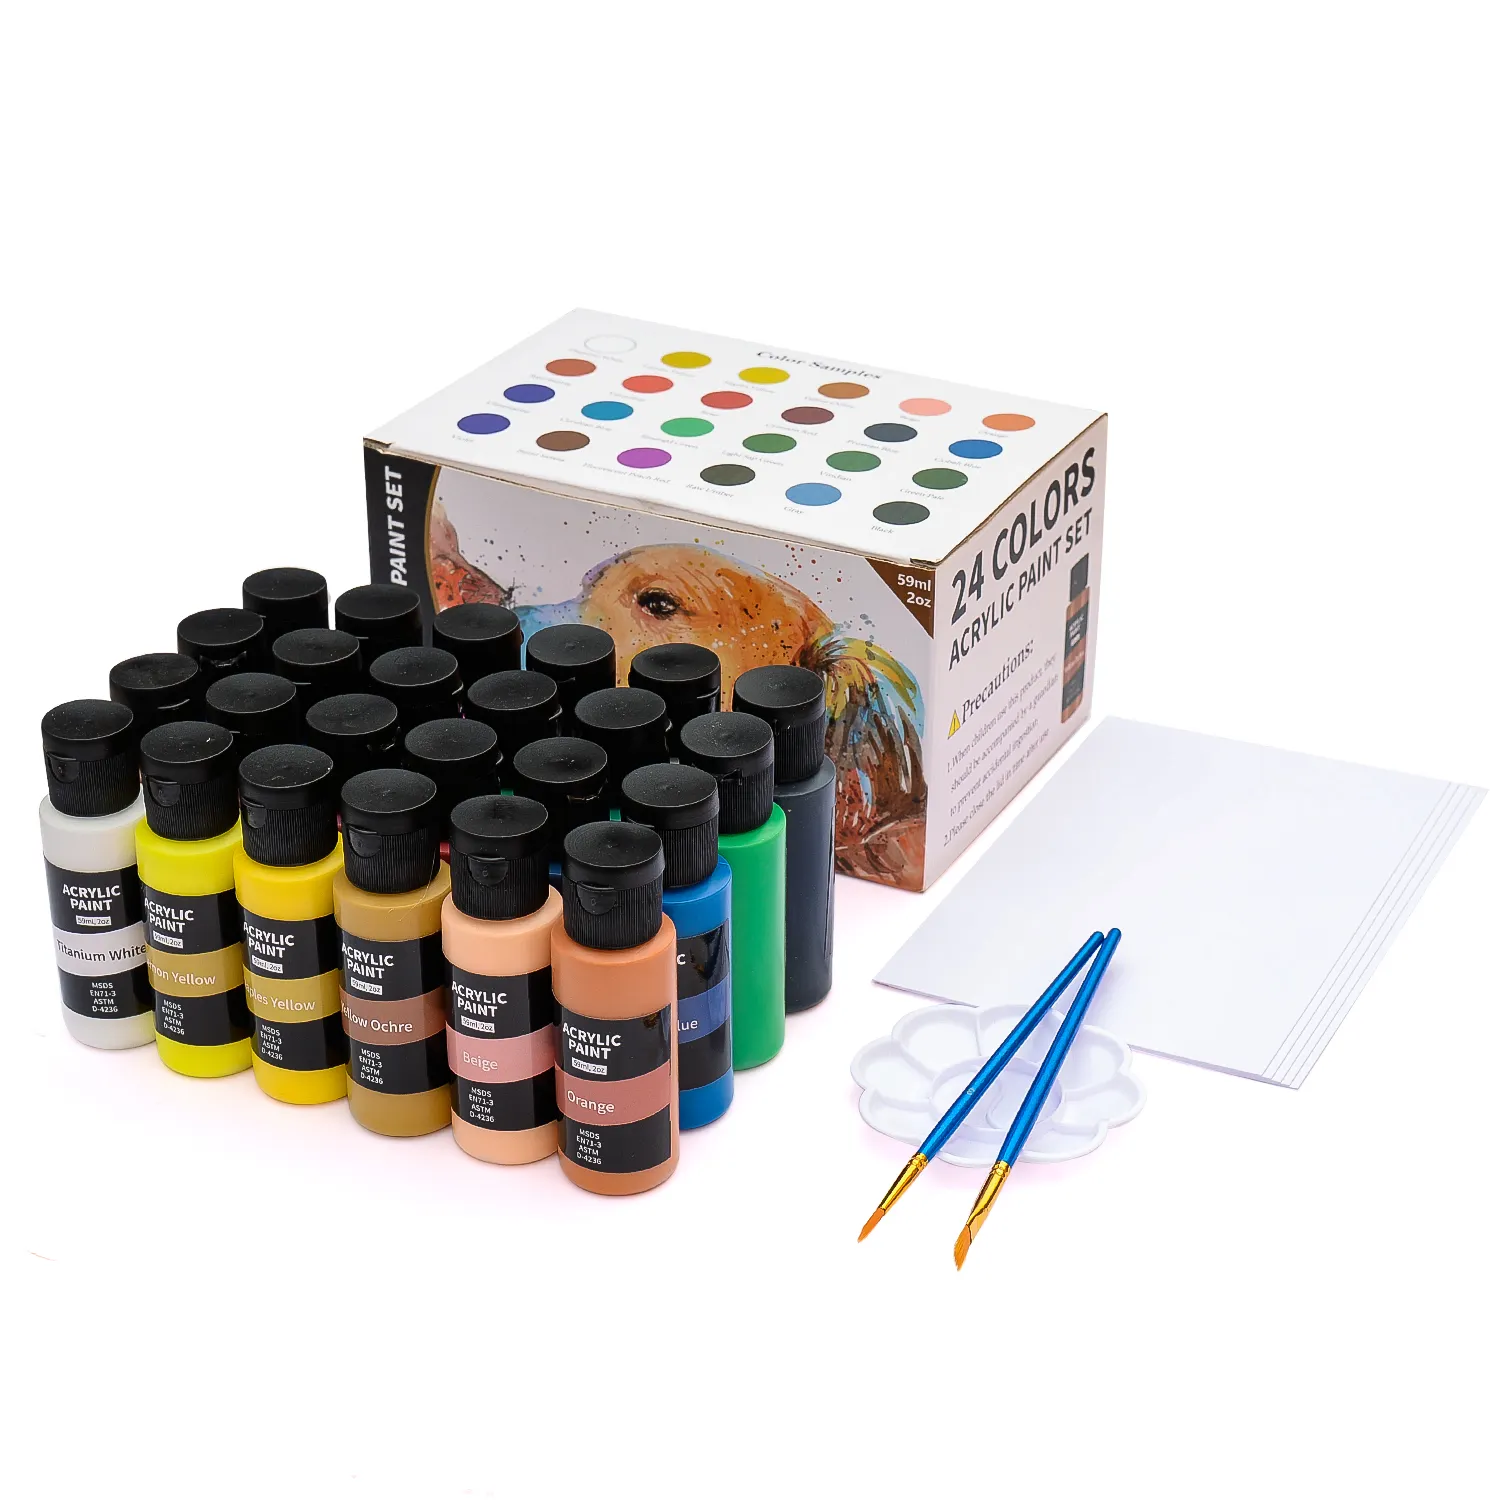 Vente chaude (59ml, 2oz) 24 couleurs 60ml ensemble de peinture acrylique de haute qualité avec emballage personnalisable